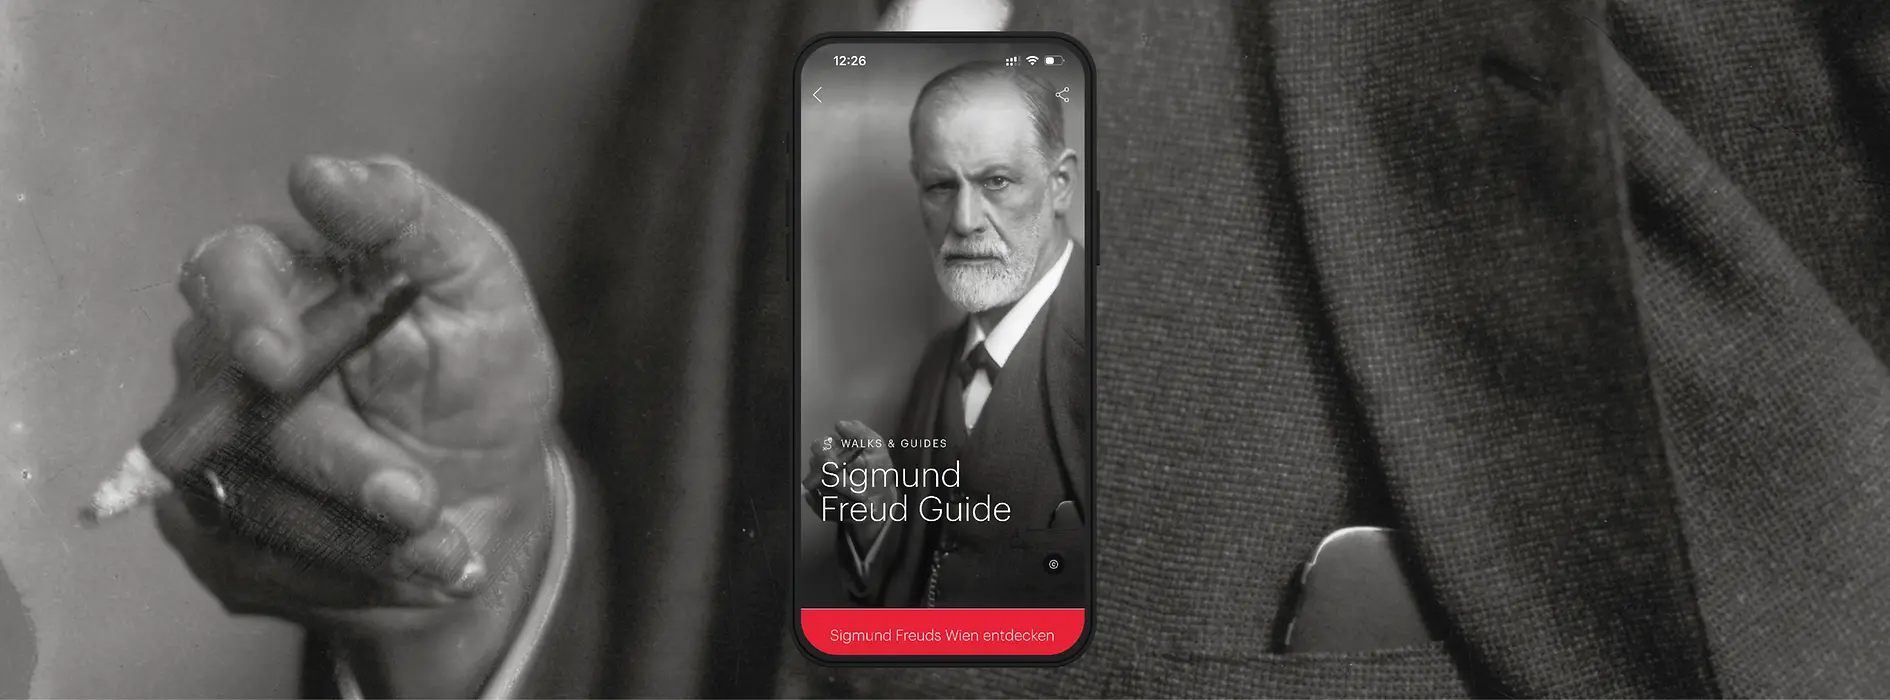 Teaser Sujet Sigmund Freud Audio Guide ivie